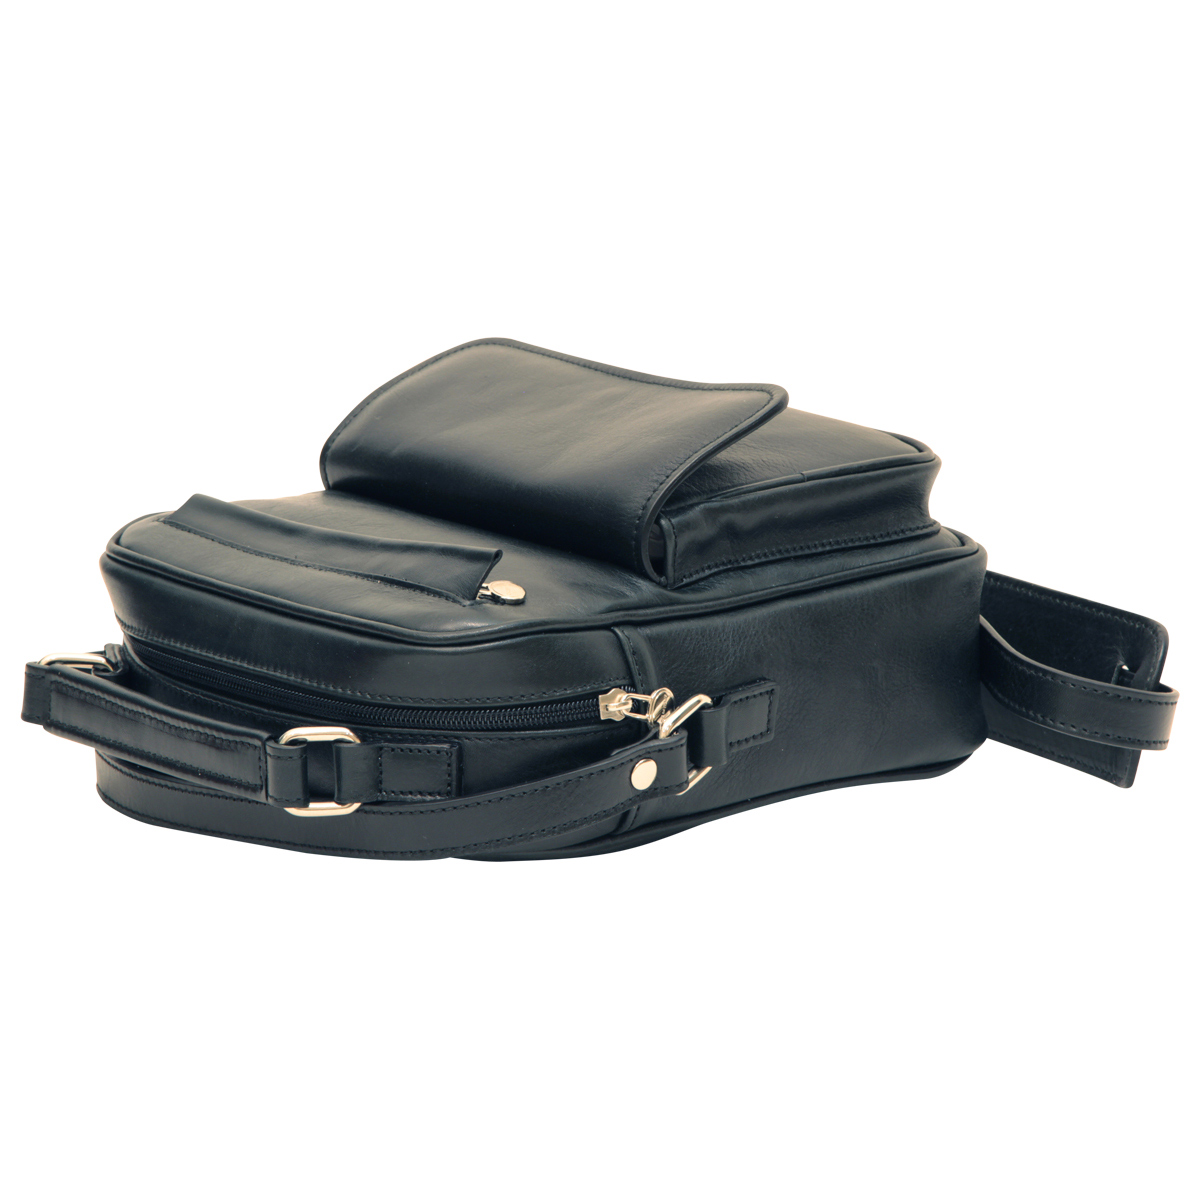 Leather Shoulder Bag with front pocket - Black | 056489NE UK | Old Angler Firenze